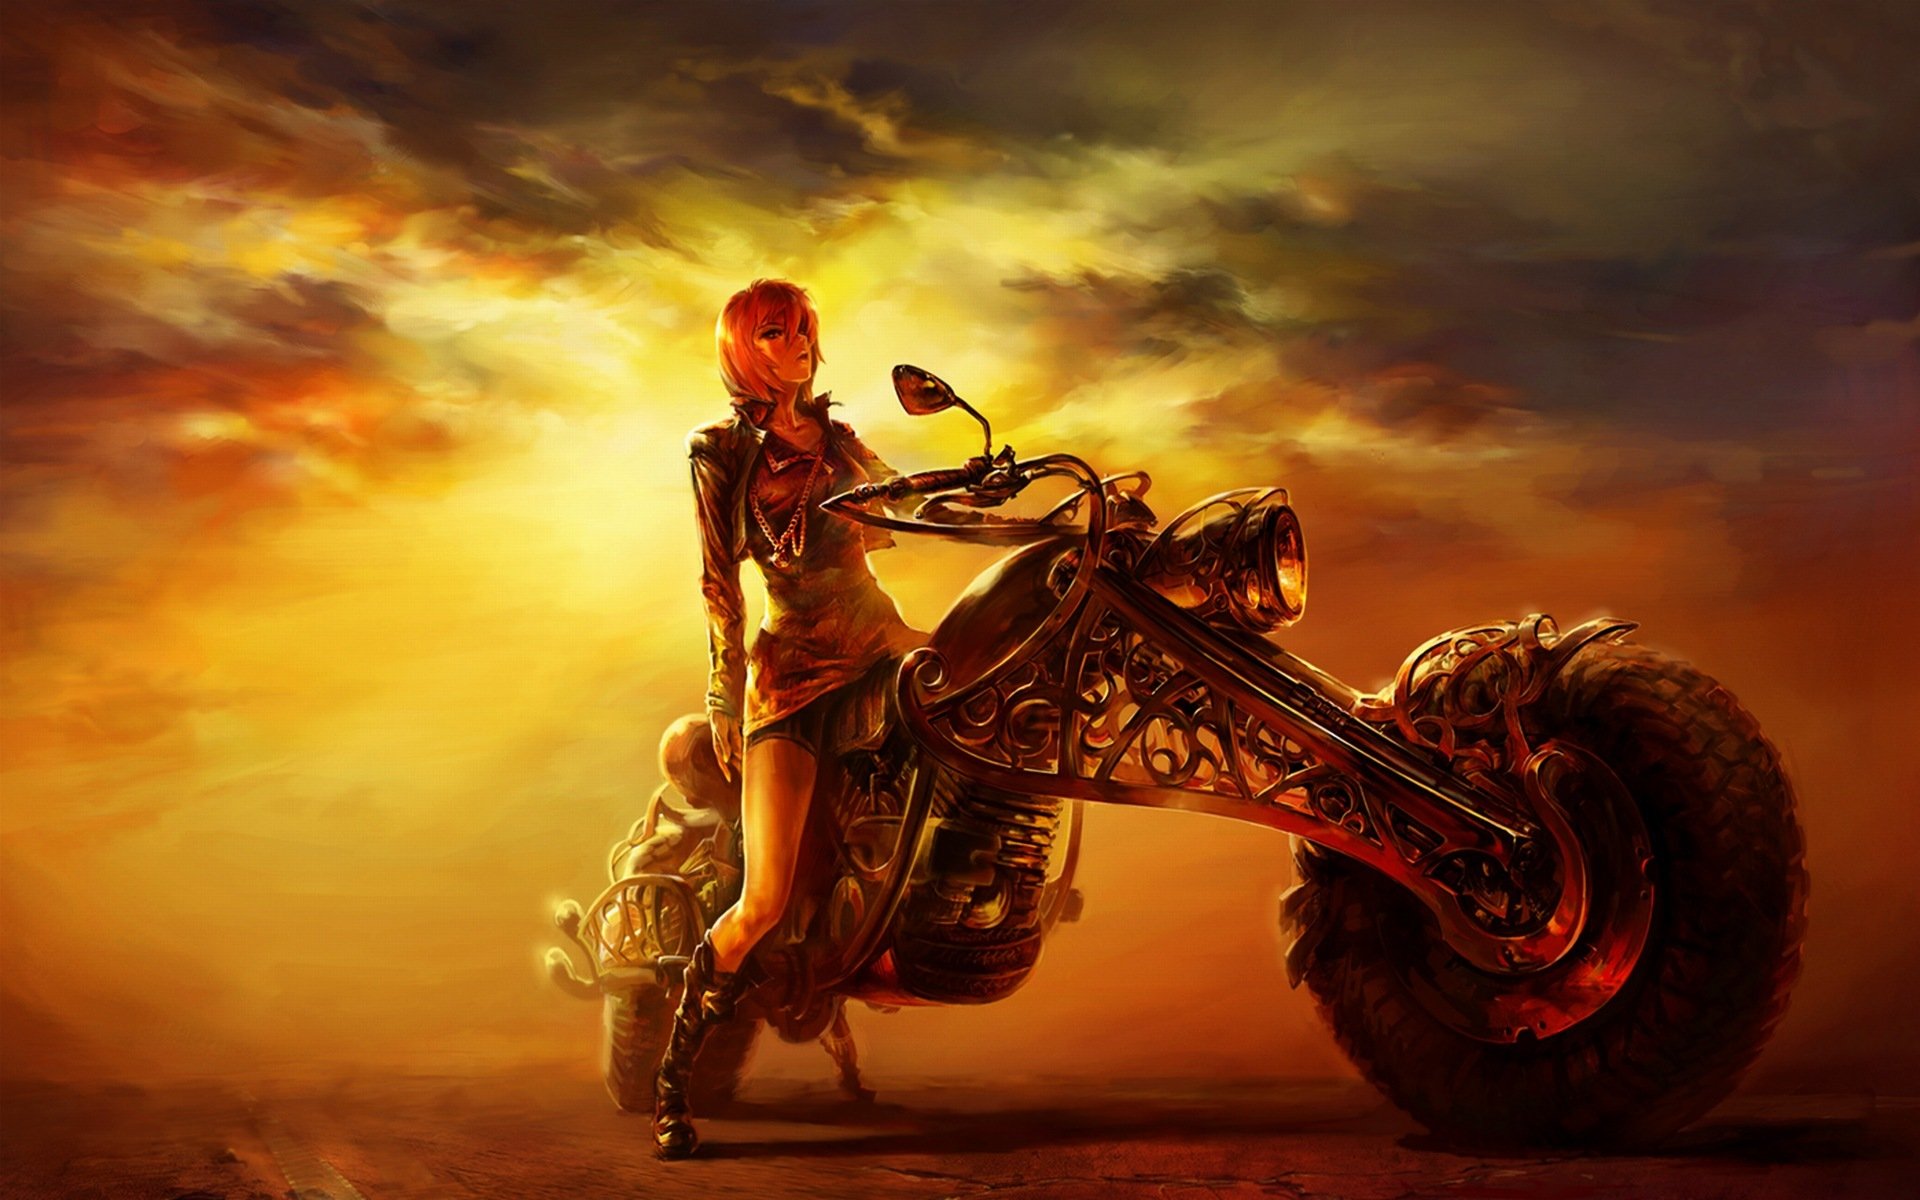 figura chica noche carretera motocicleta puesta de sol